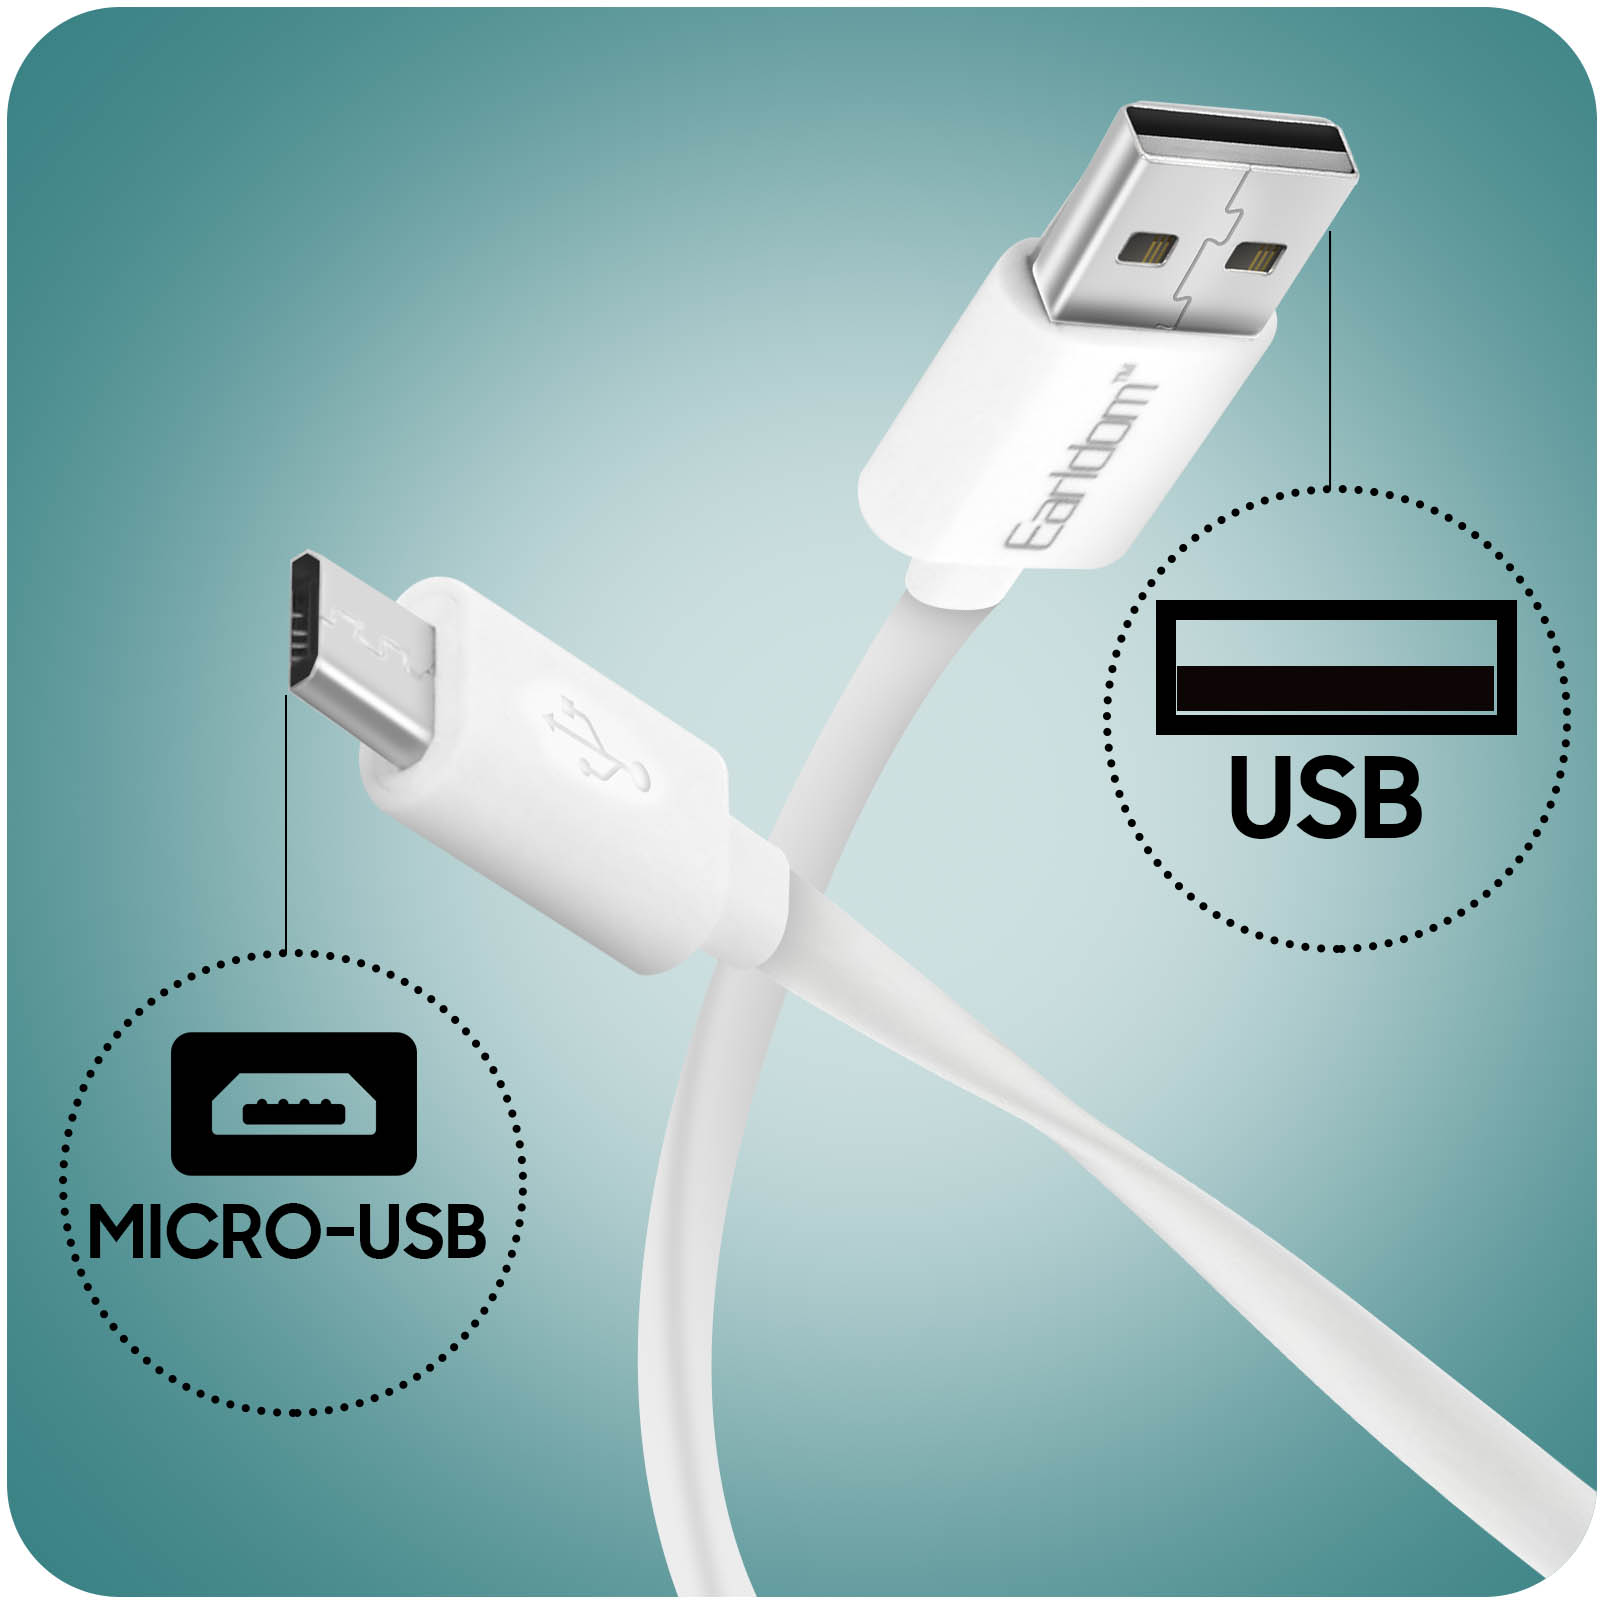 Avizar Chargeur USB Secteur Universel 2.1A + Câble USB type C